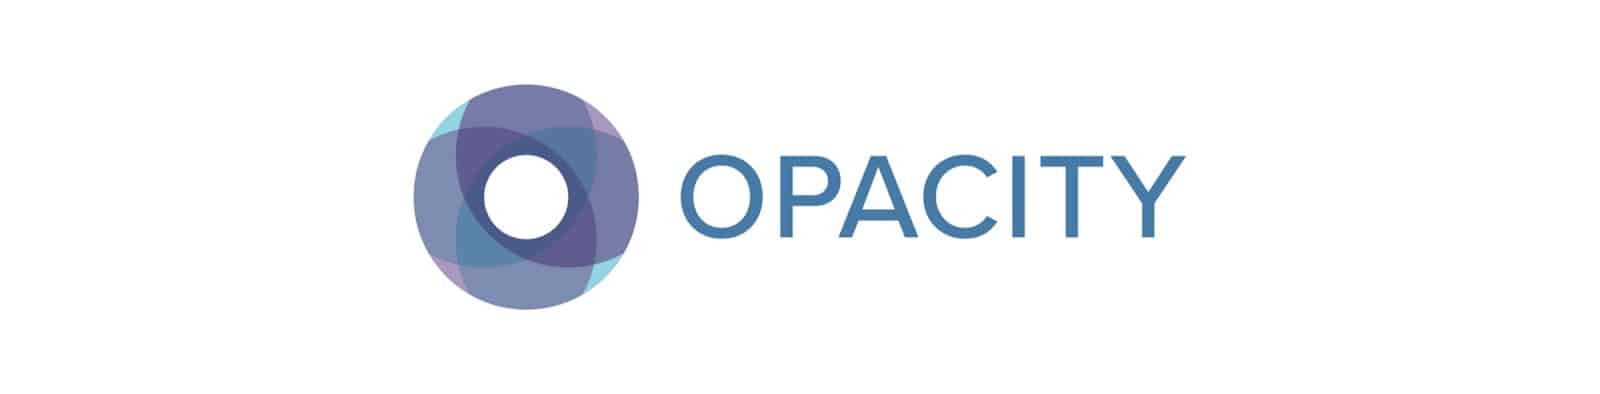 Opacity Logo